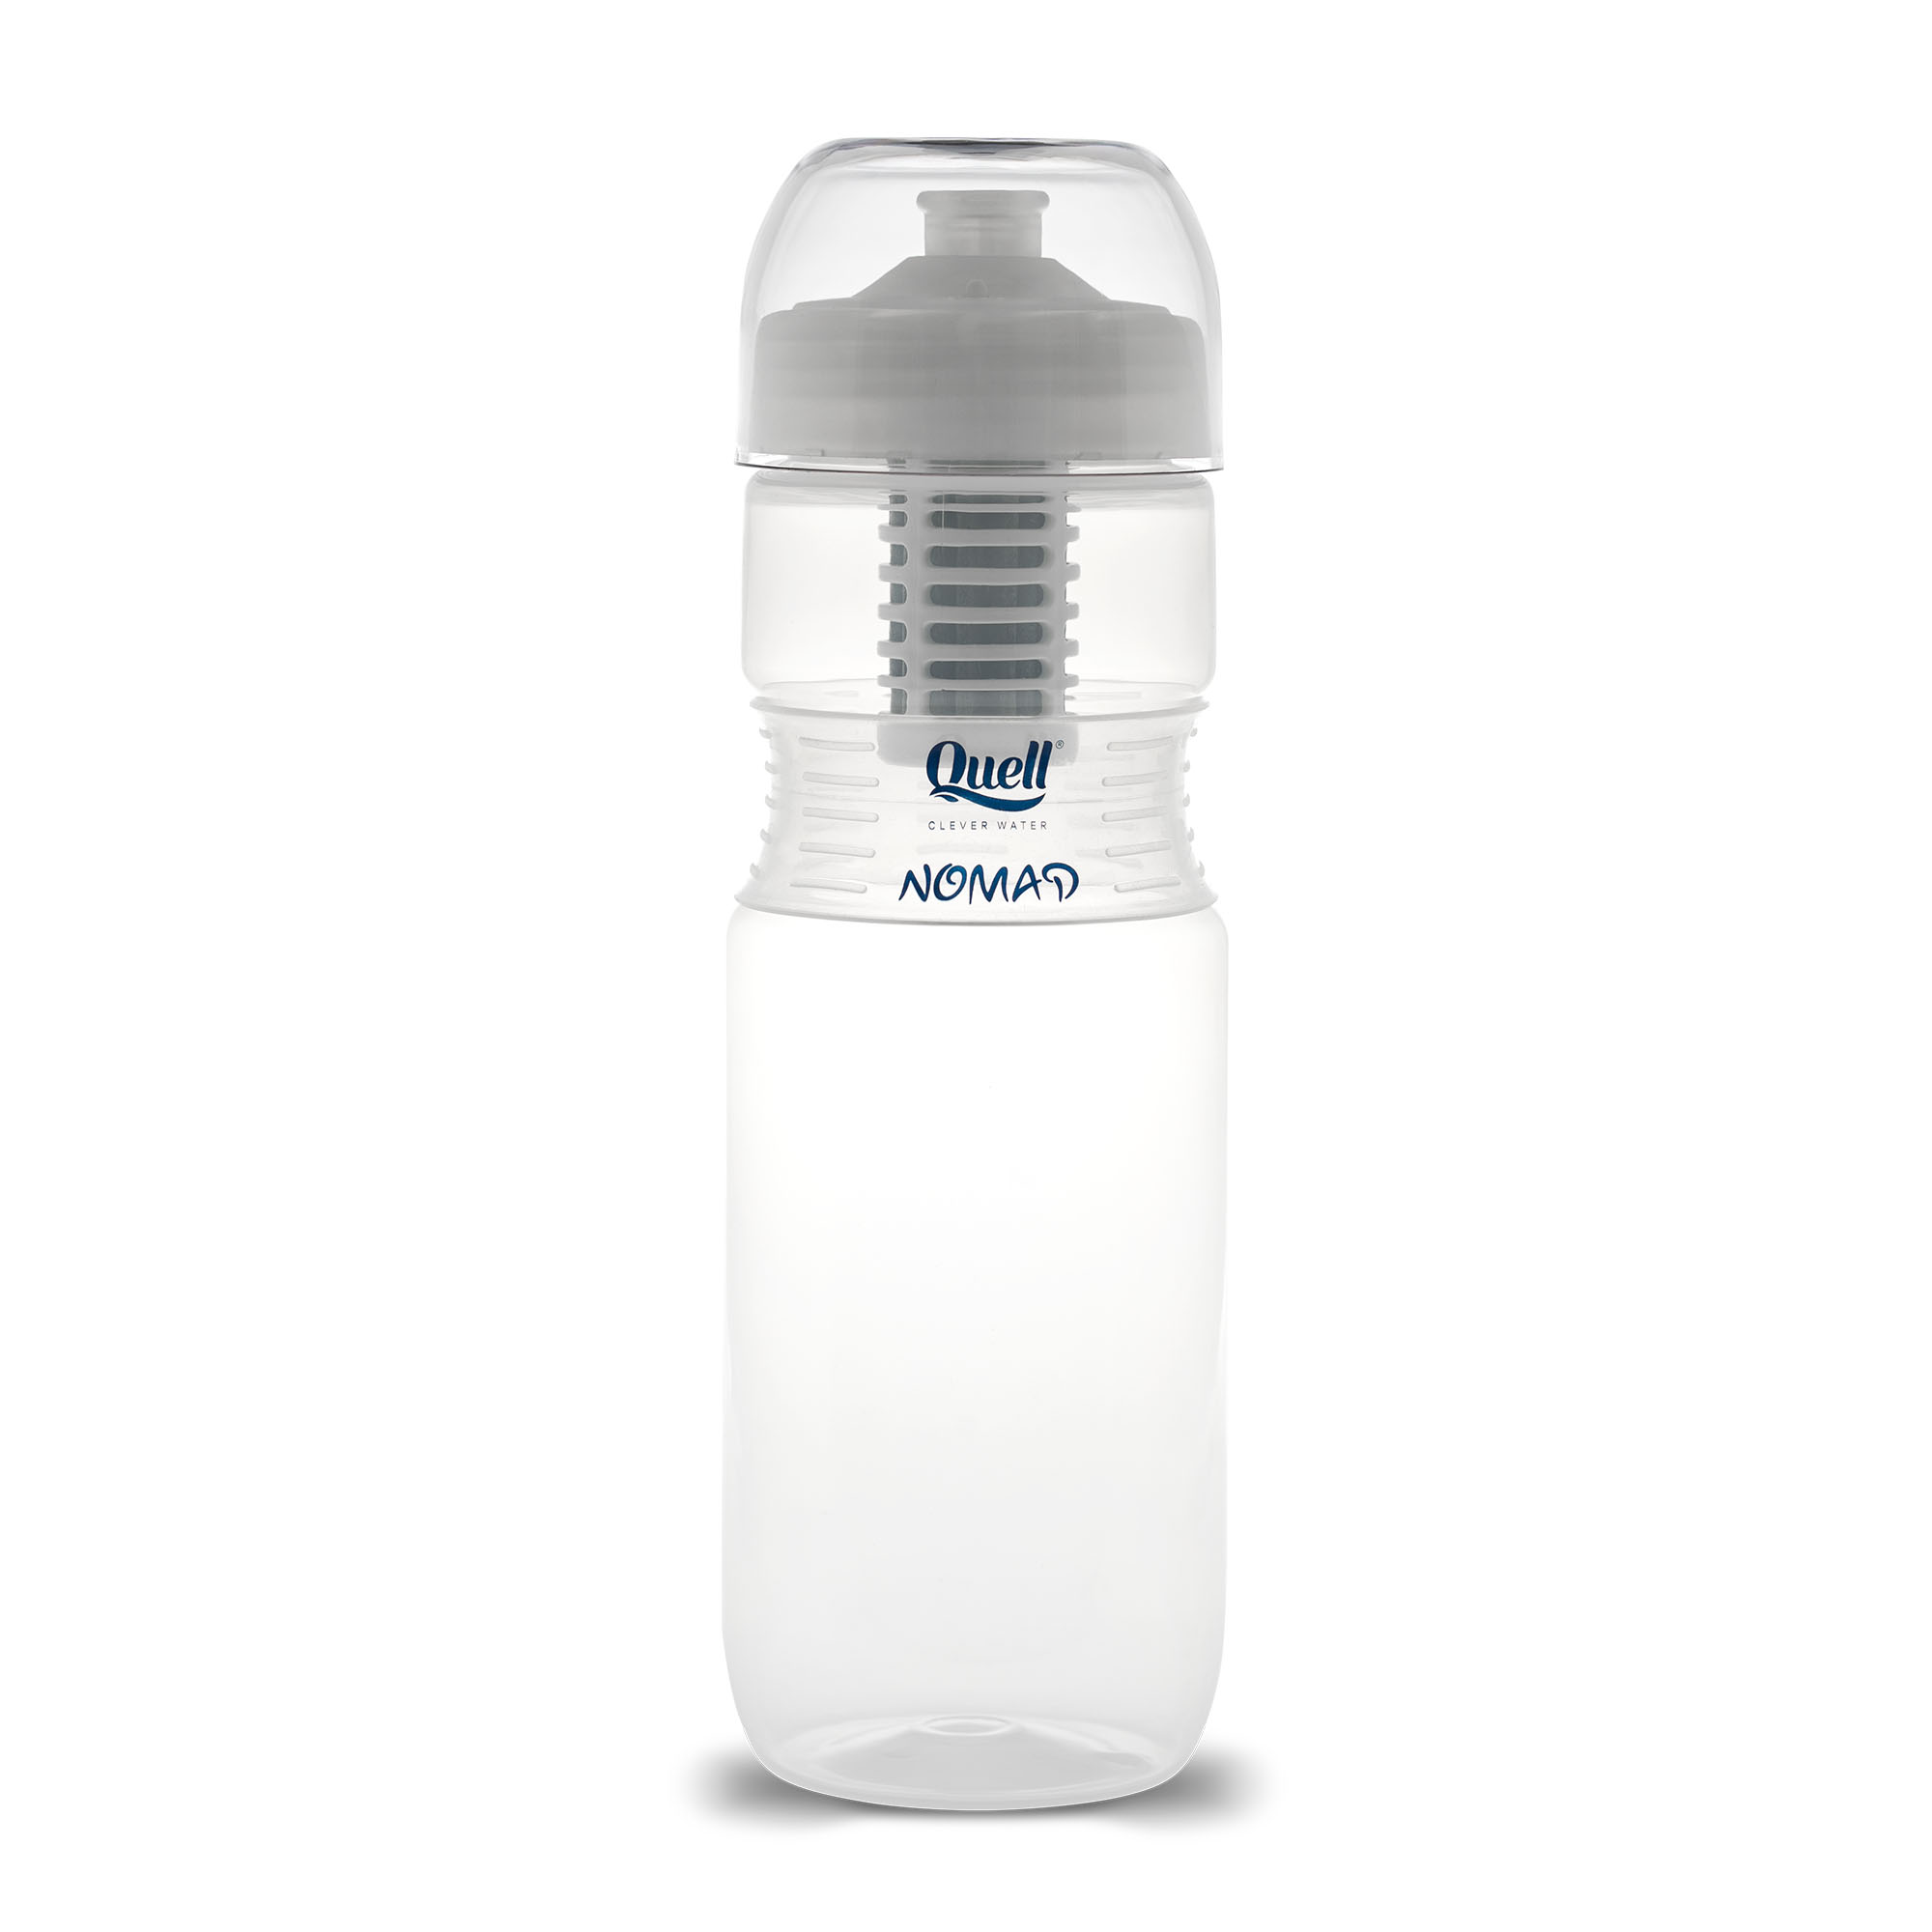 Quell NOMAD Filtertrinkflasche – Test 1 und 2